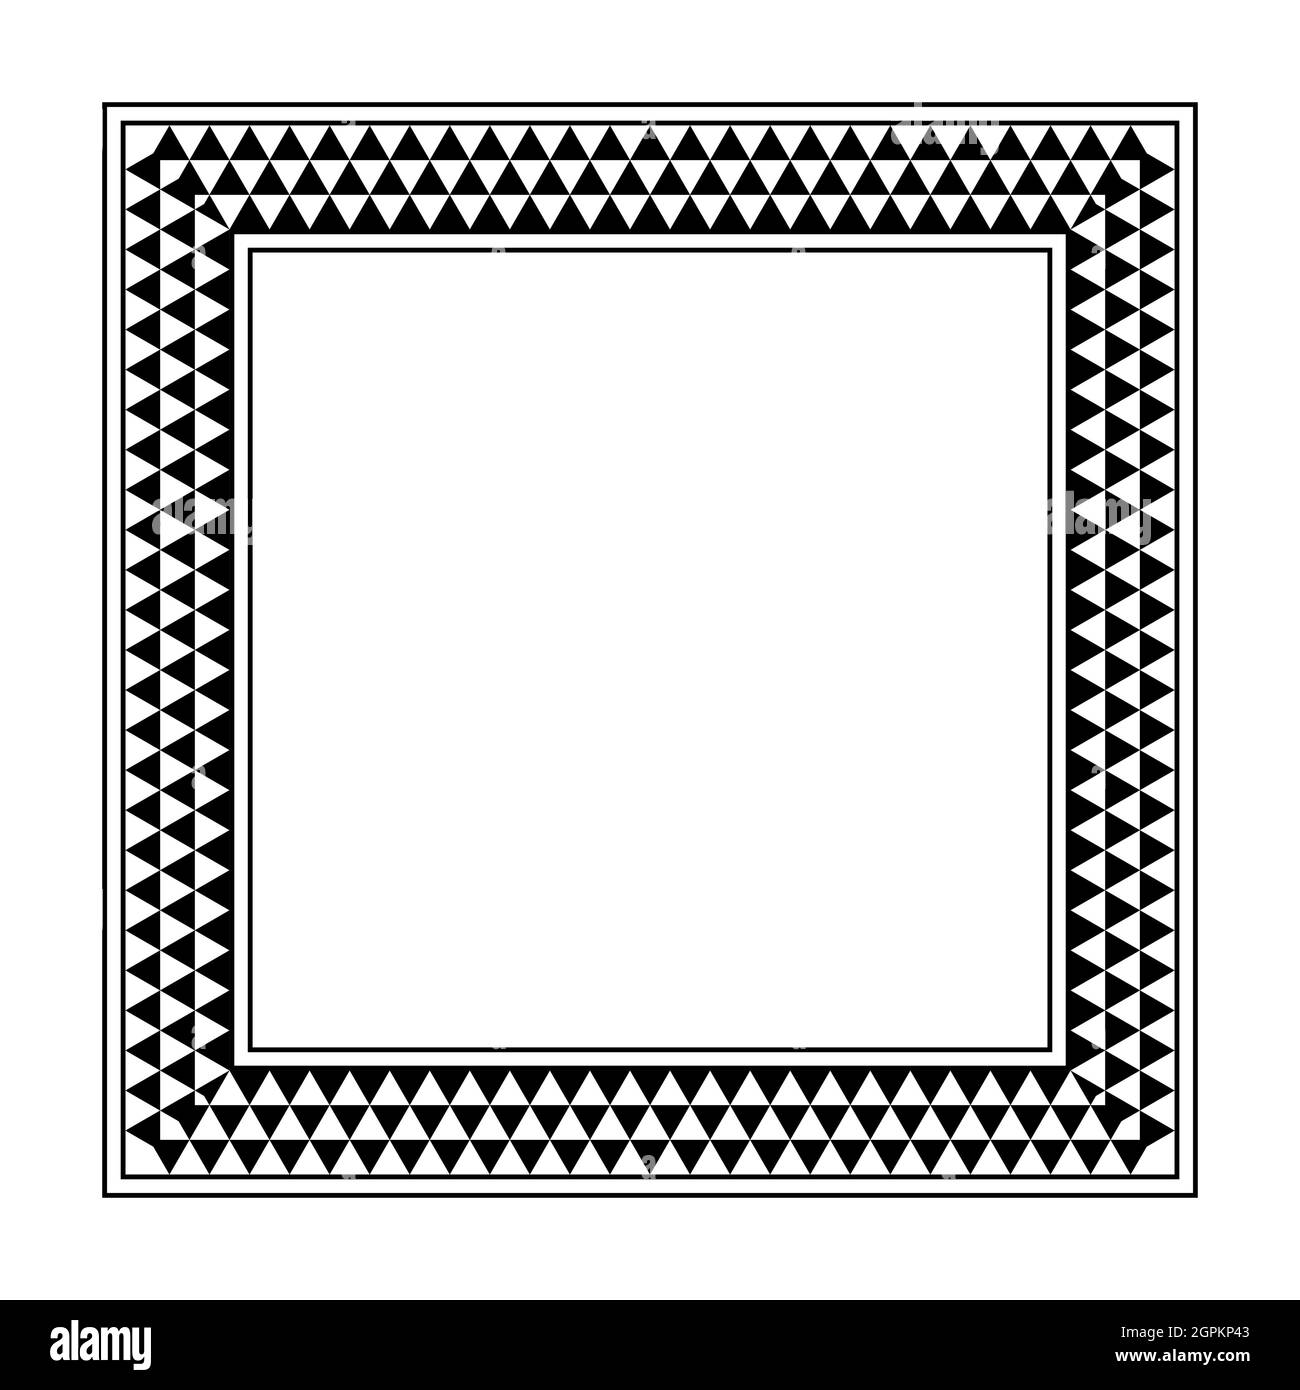 Marco cuadrado con patrón de cuadros triangulares, borde con patrón dentado Ilustración del Vector